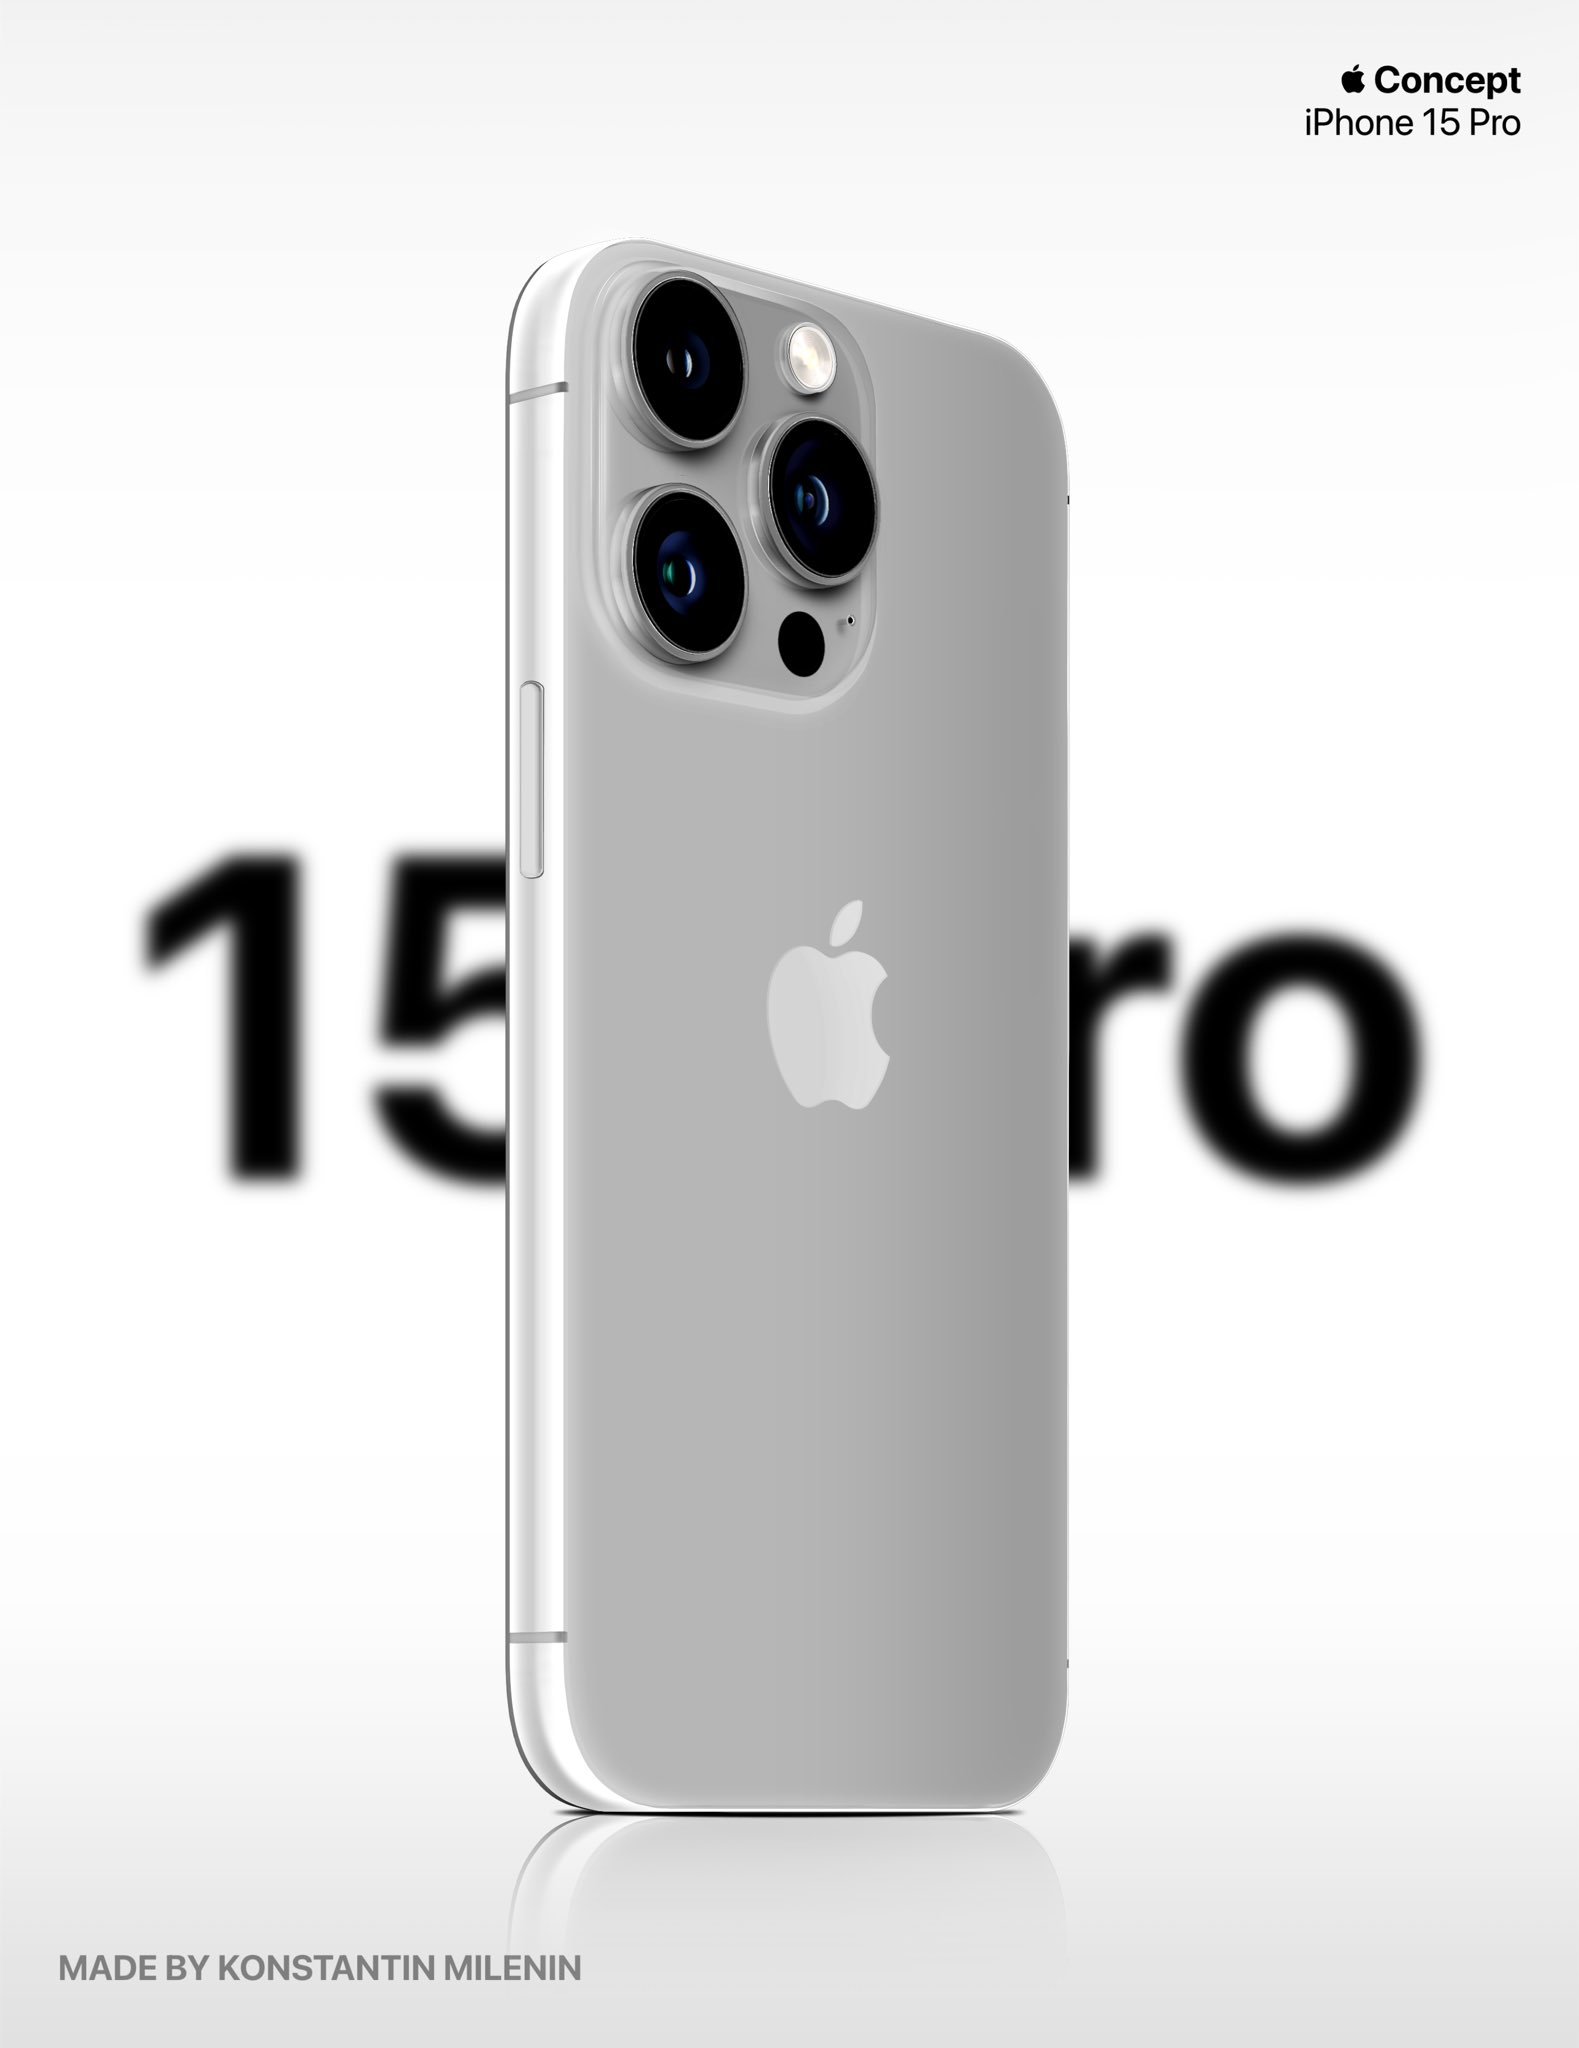 Đây là iPhone 15 Pro: Ngoại hình khác lạ với thiết kế bo cong, màu đỏ đặc biệt ấn tượng! - Ảnh 4.